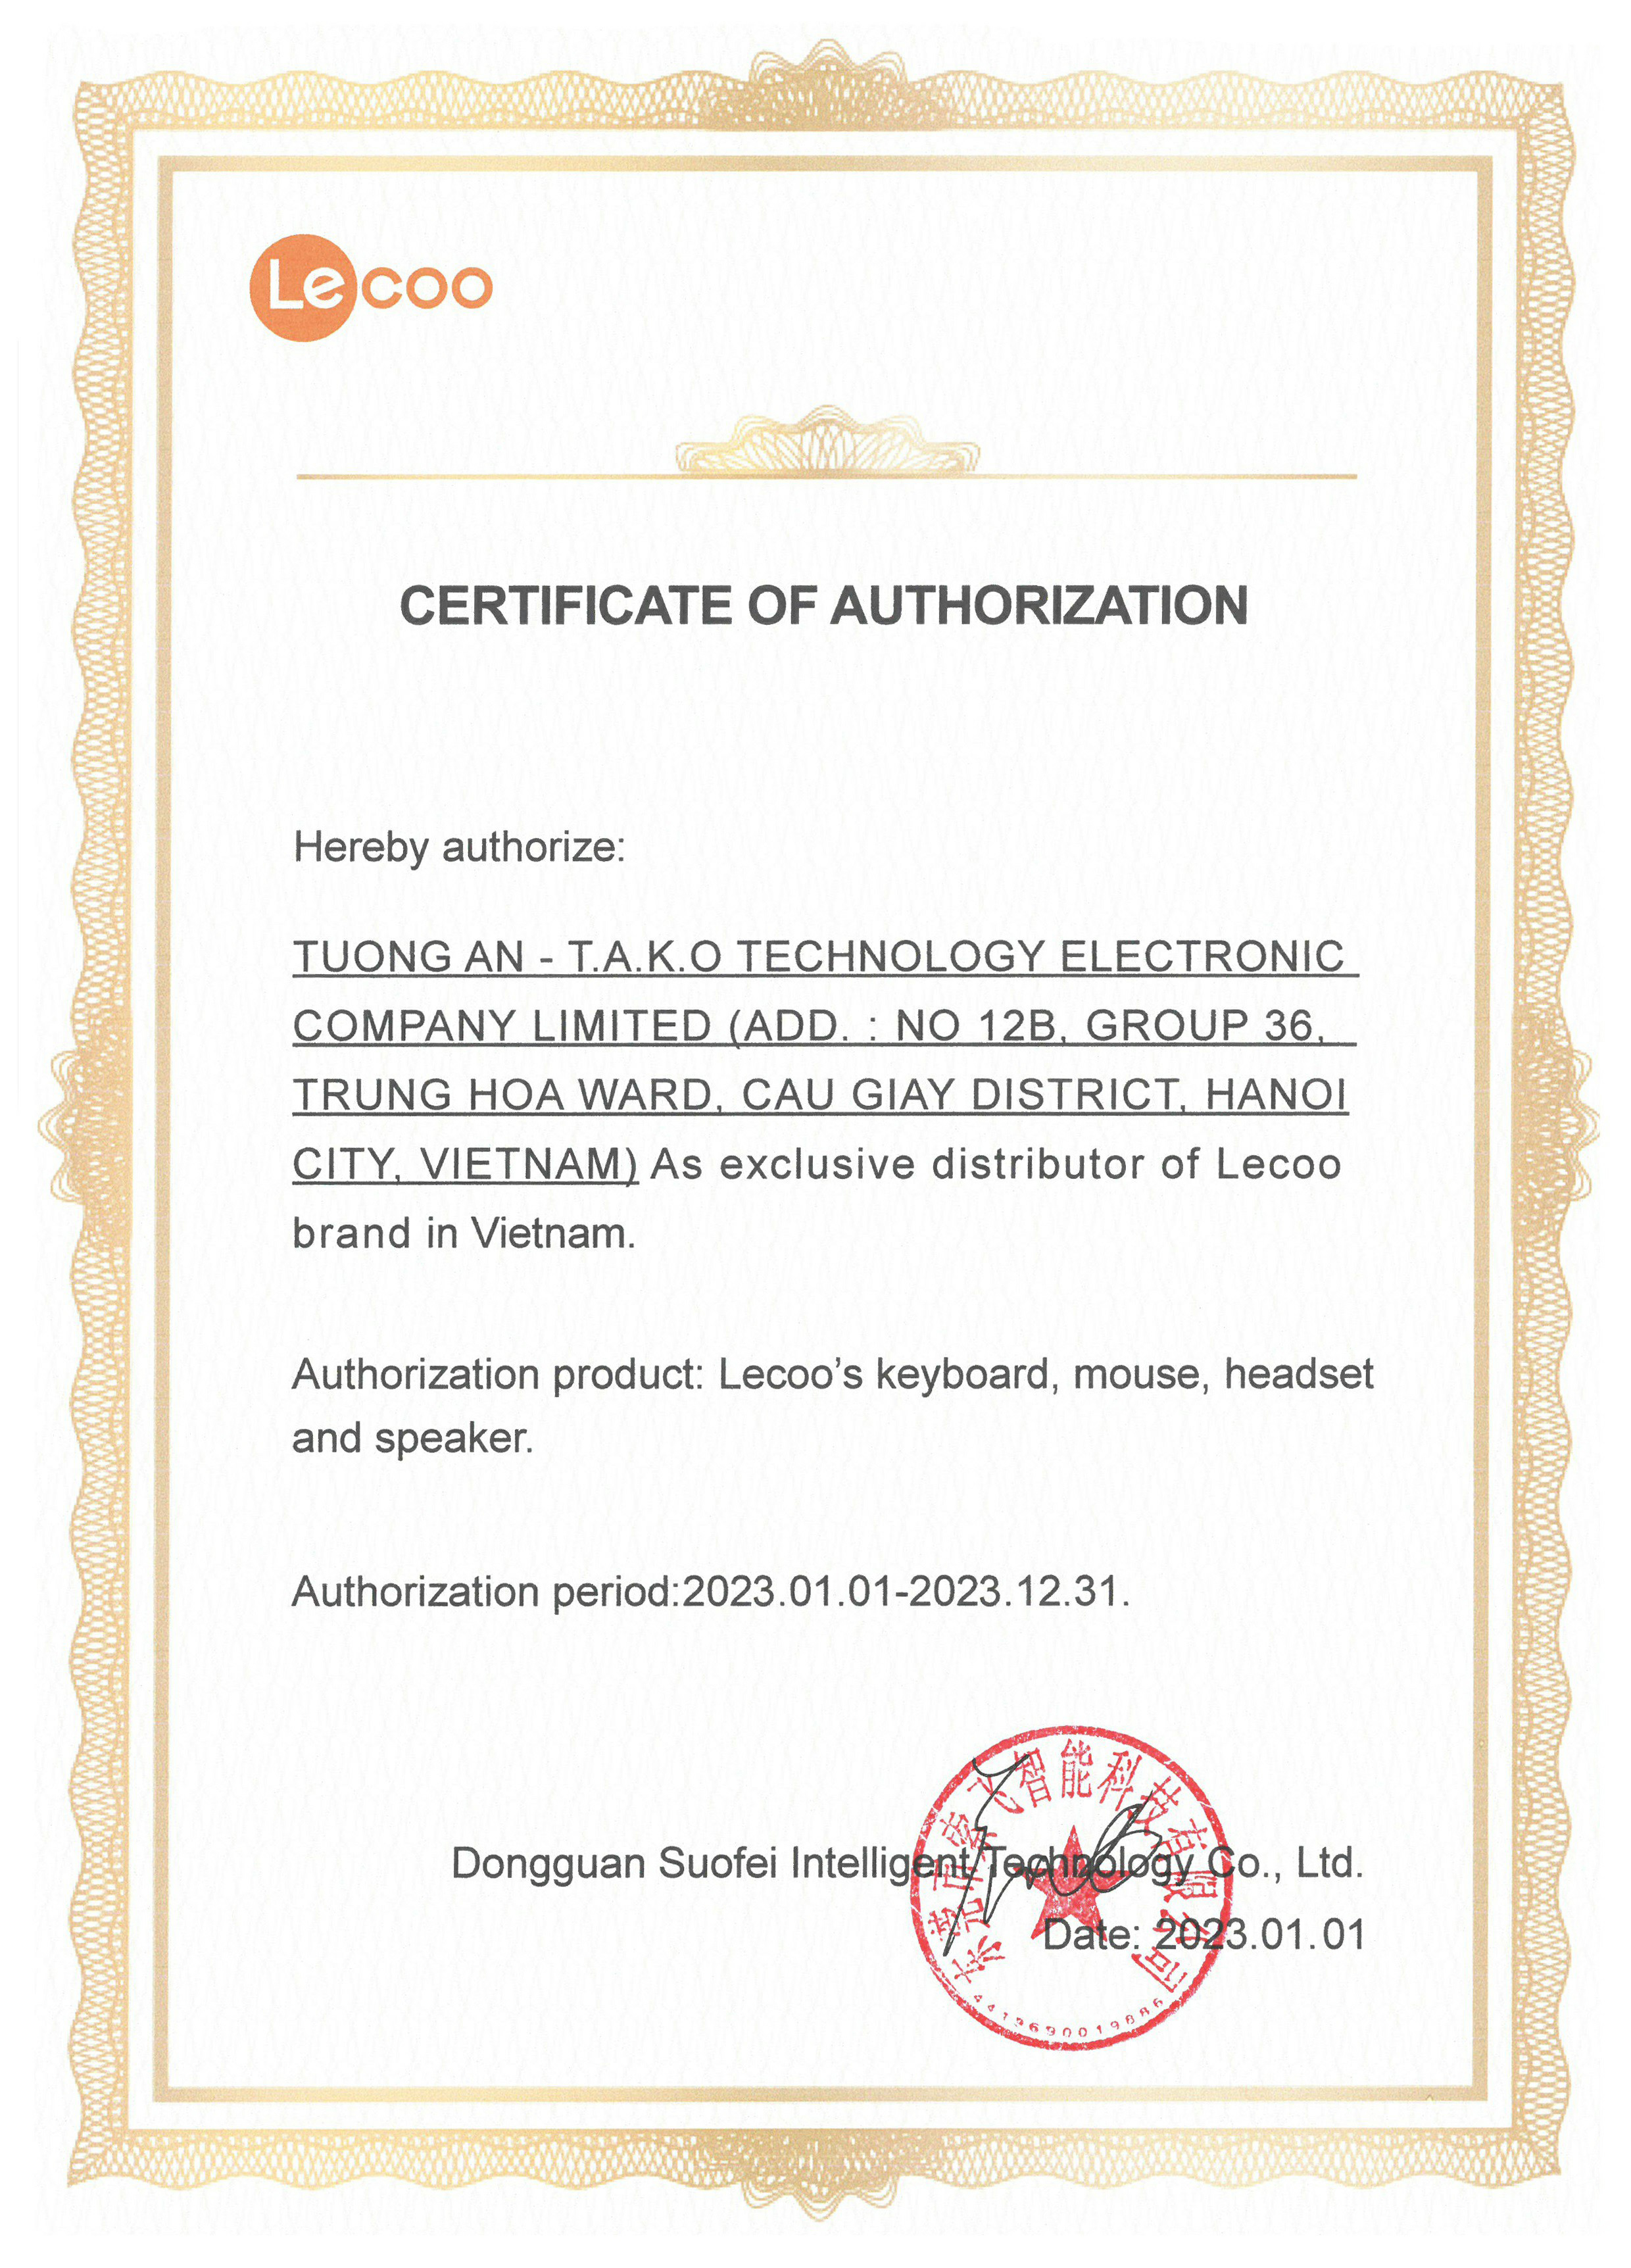 Giấy chứng nhận phân phối độc quyền Lecoo tại Việt Nam 2023